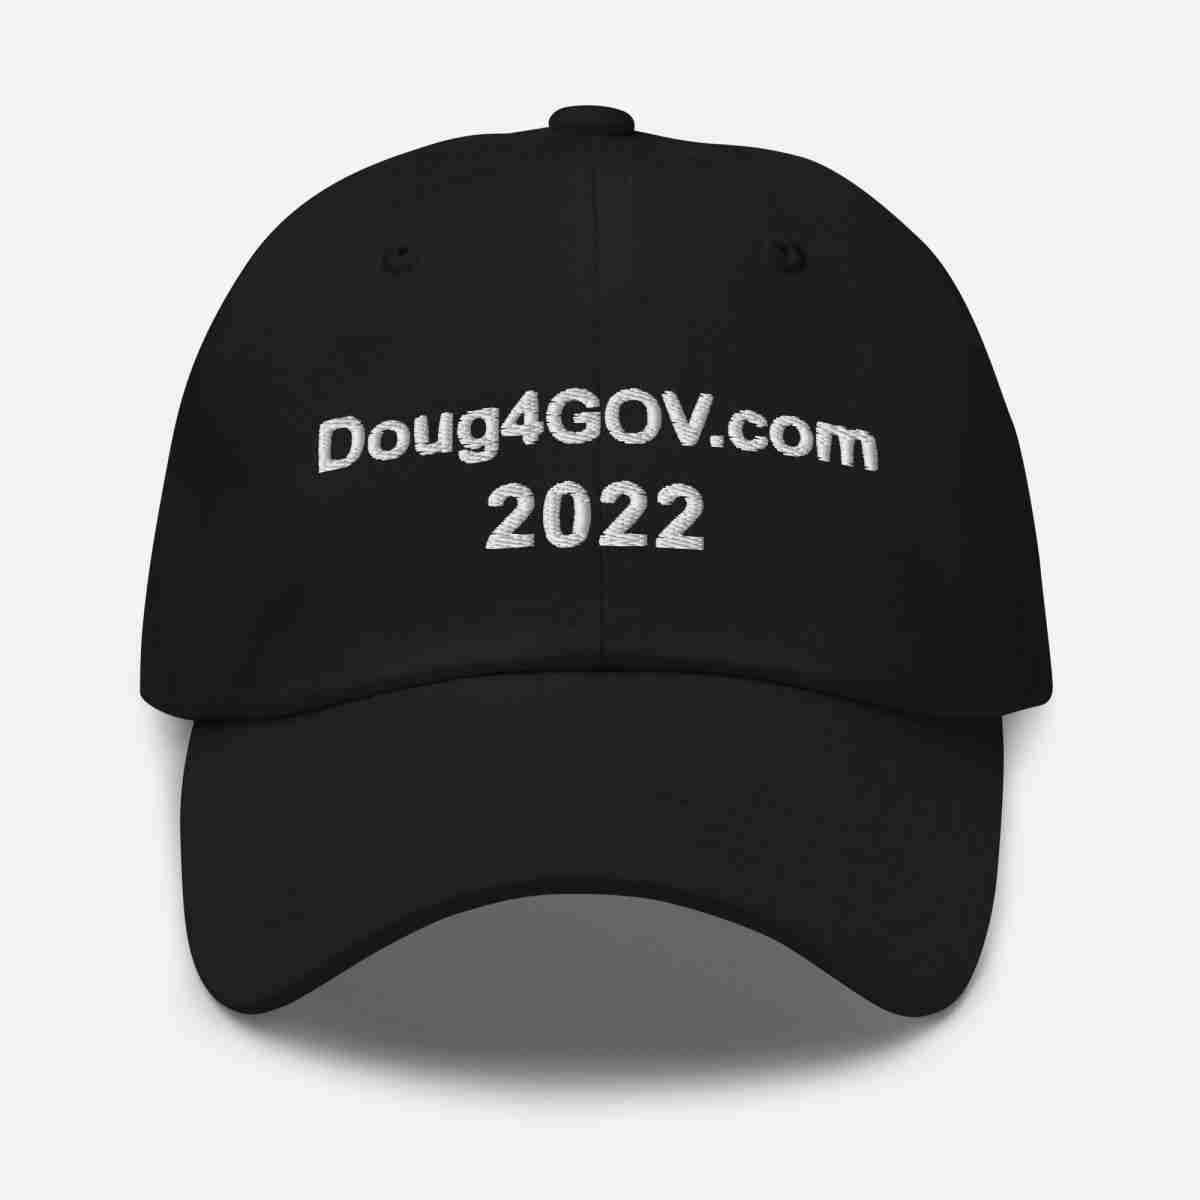 Doug4Gov.com Dad Hat_Black Front